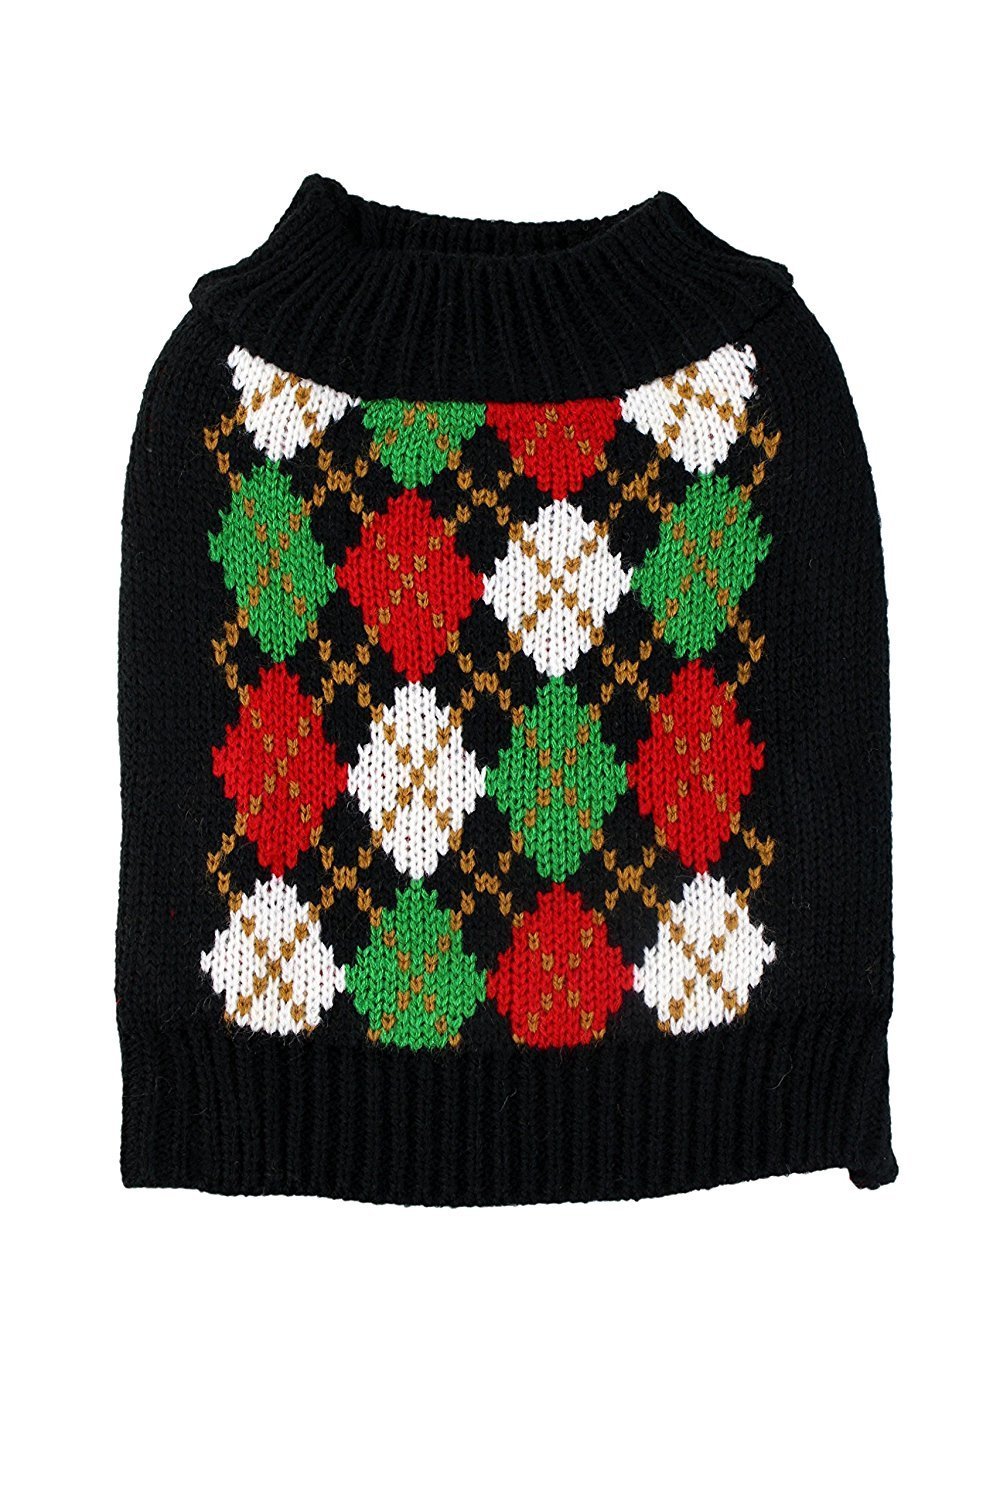 Midlee Christmas Argyle Dog Sweater X-Large - PawsPlanet Australia